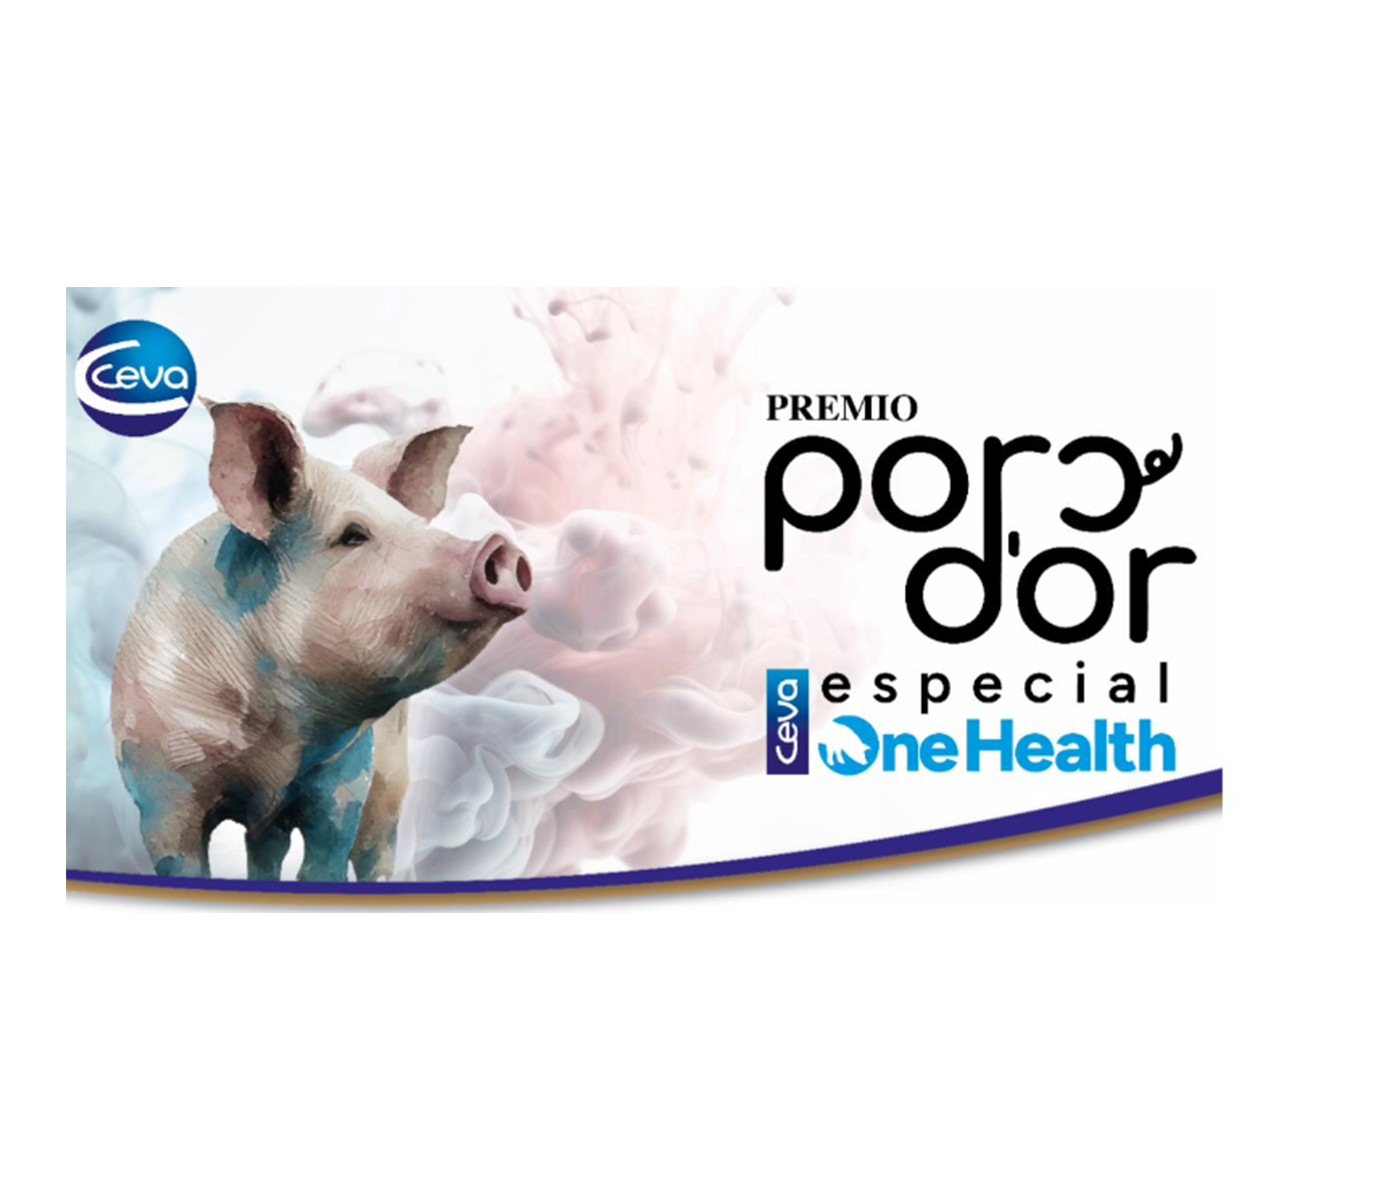 Abierta convocatoria para optar al Premio Porc d’Or Especial One Health